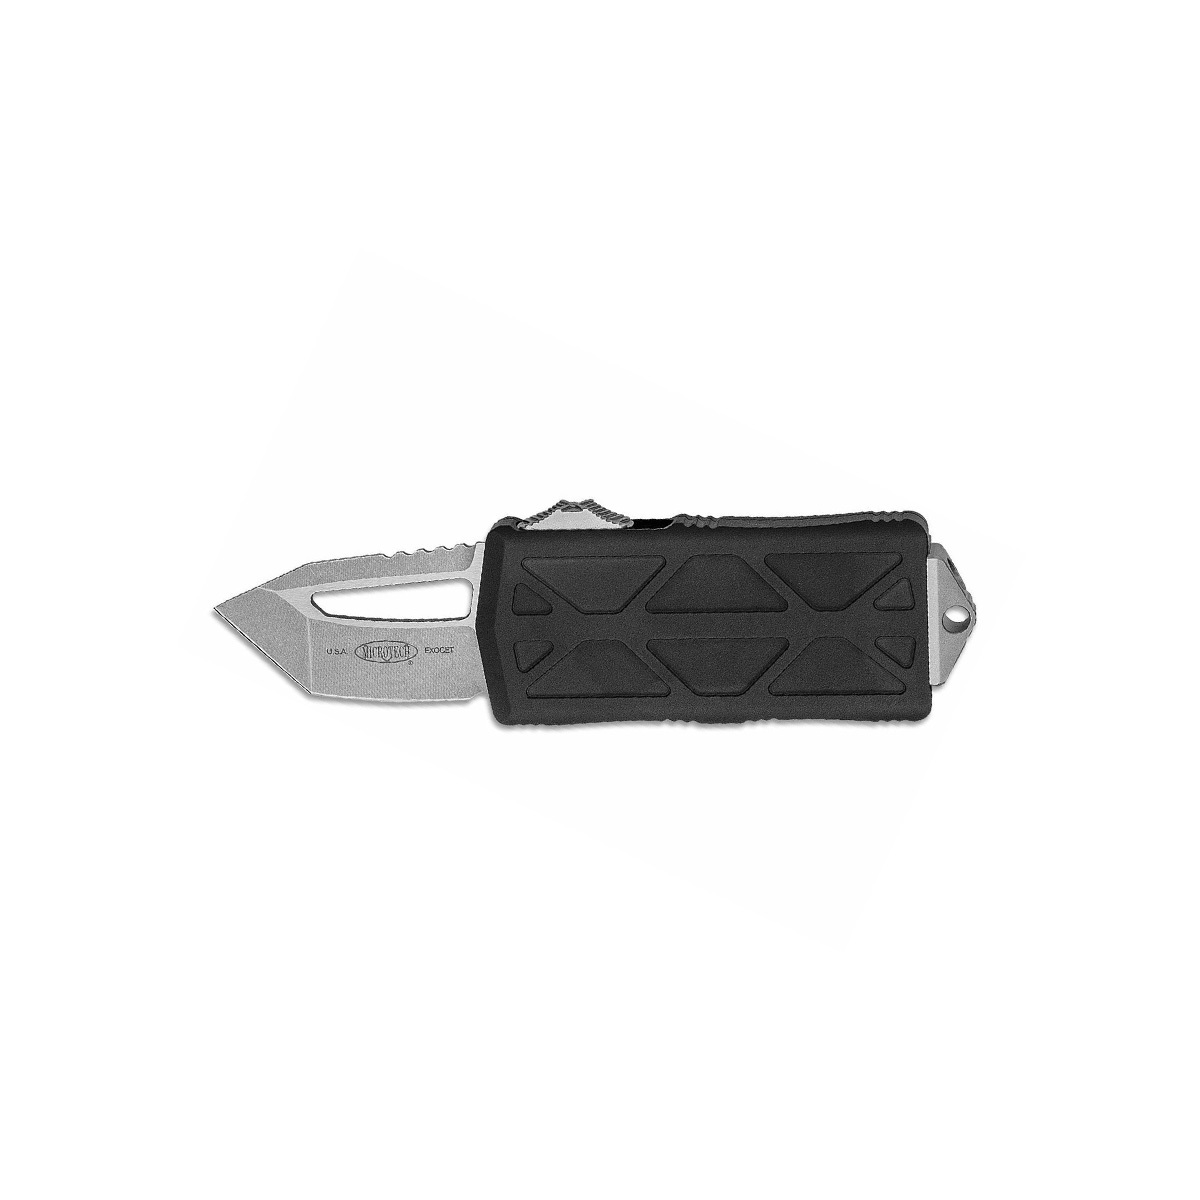 фото Автоматический выкидной нож-зажим для купюр microtech exocet mt_158-10, сталь bohler m390, рукоять алюминий